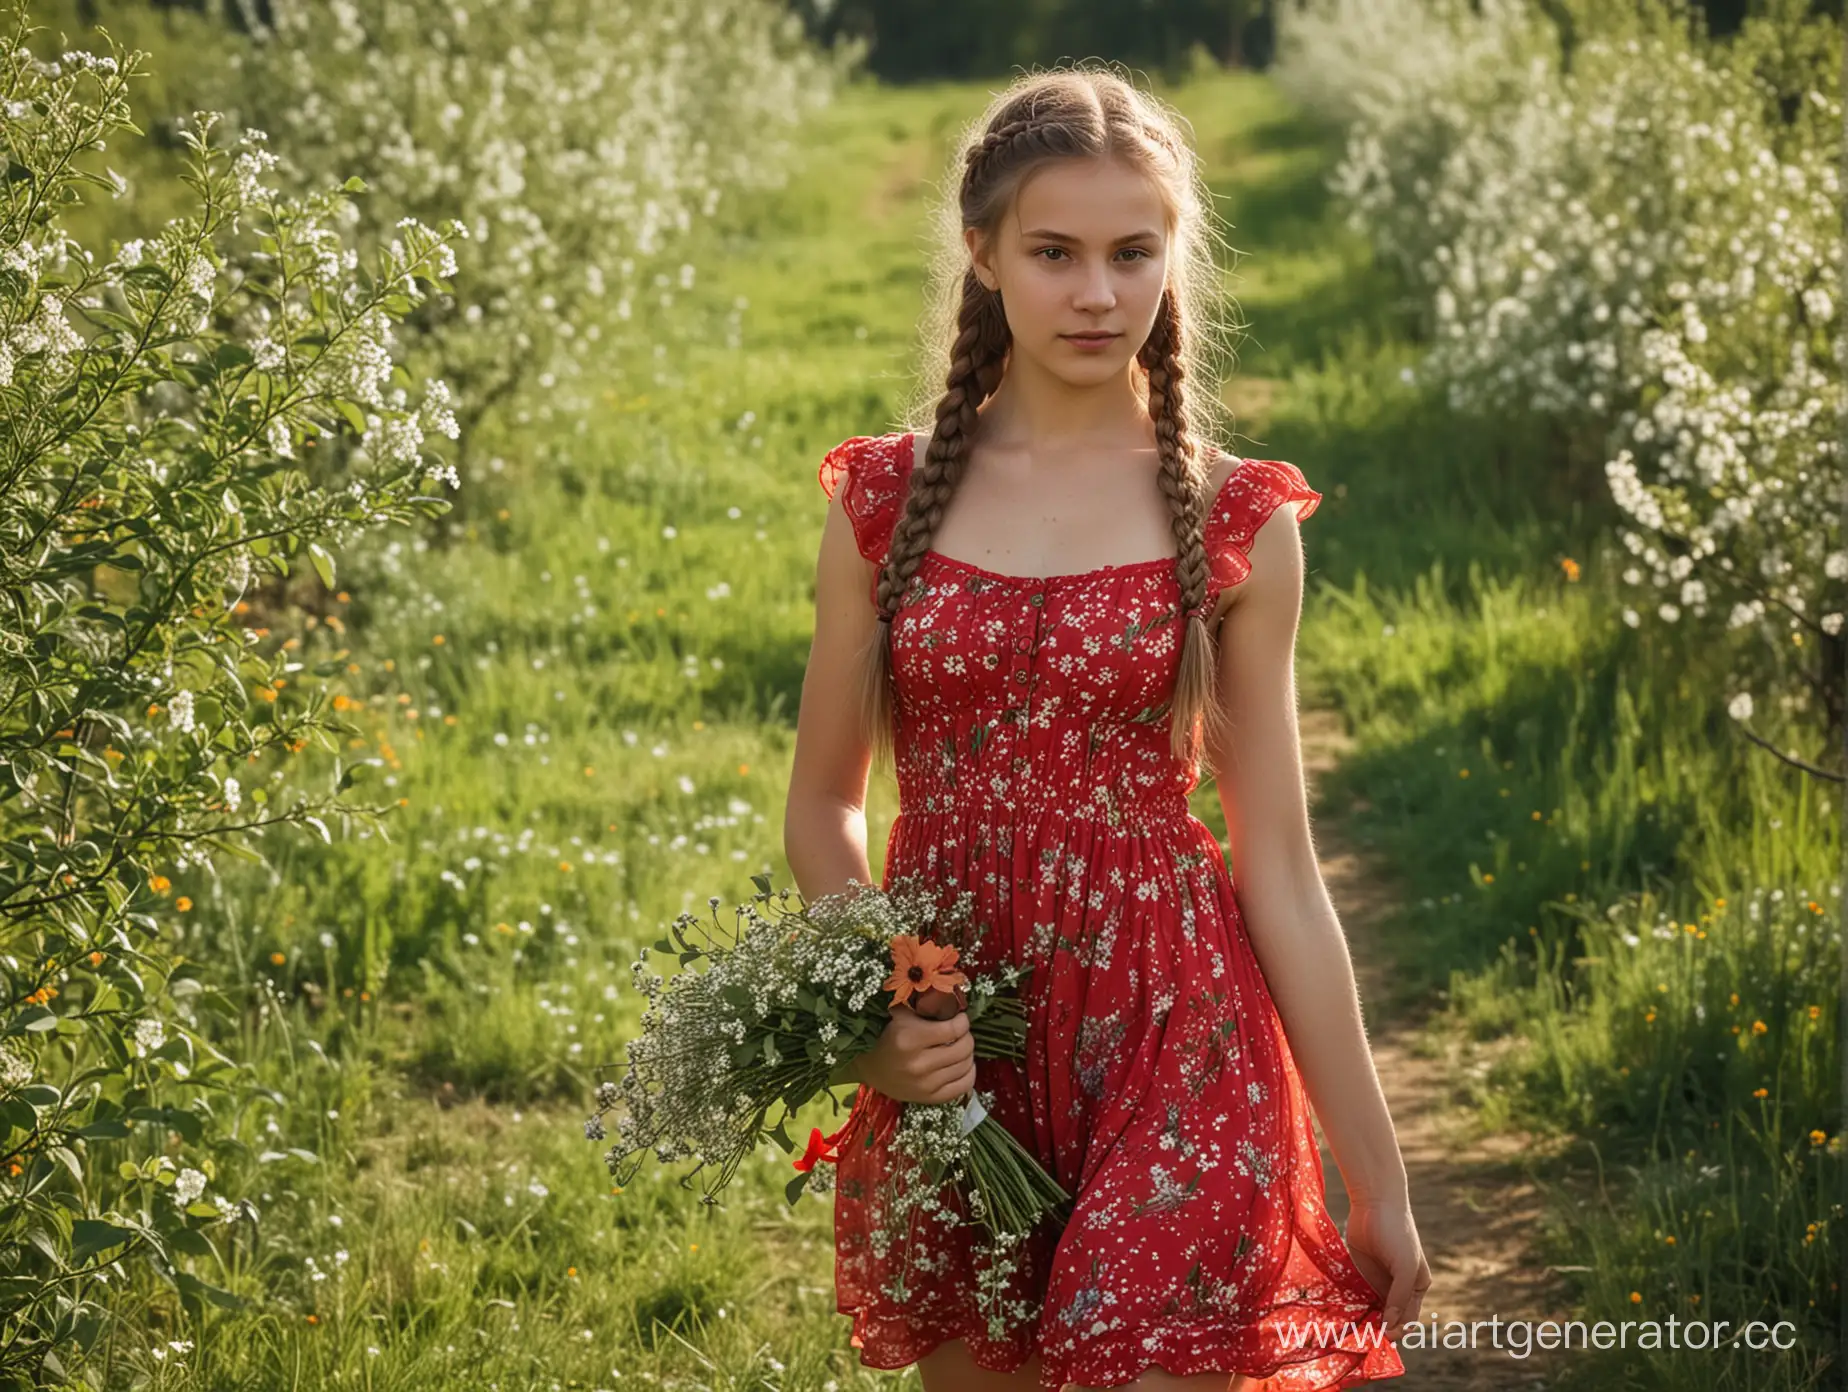 Русская молодая сельская девушка в фруктовом саду, красный полупрозрачный сарафан ультра короткий, длинные русые косы, держит букет полевых цветов